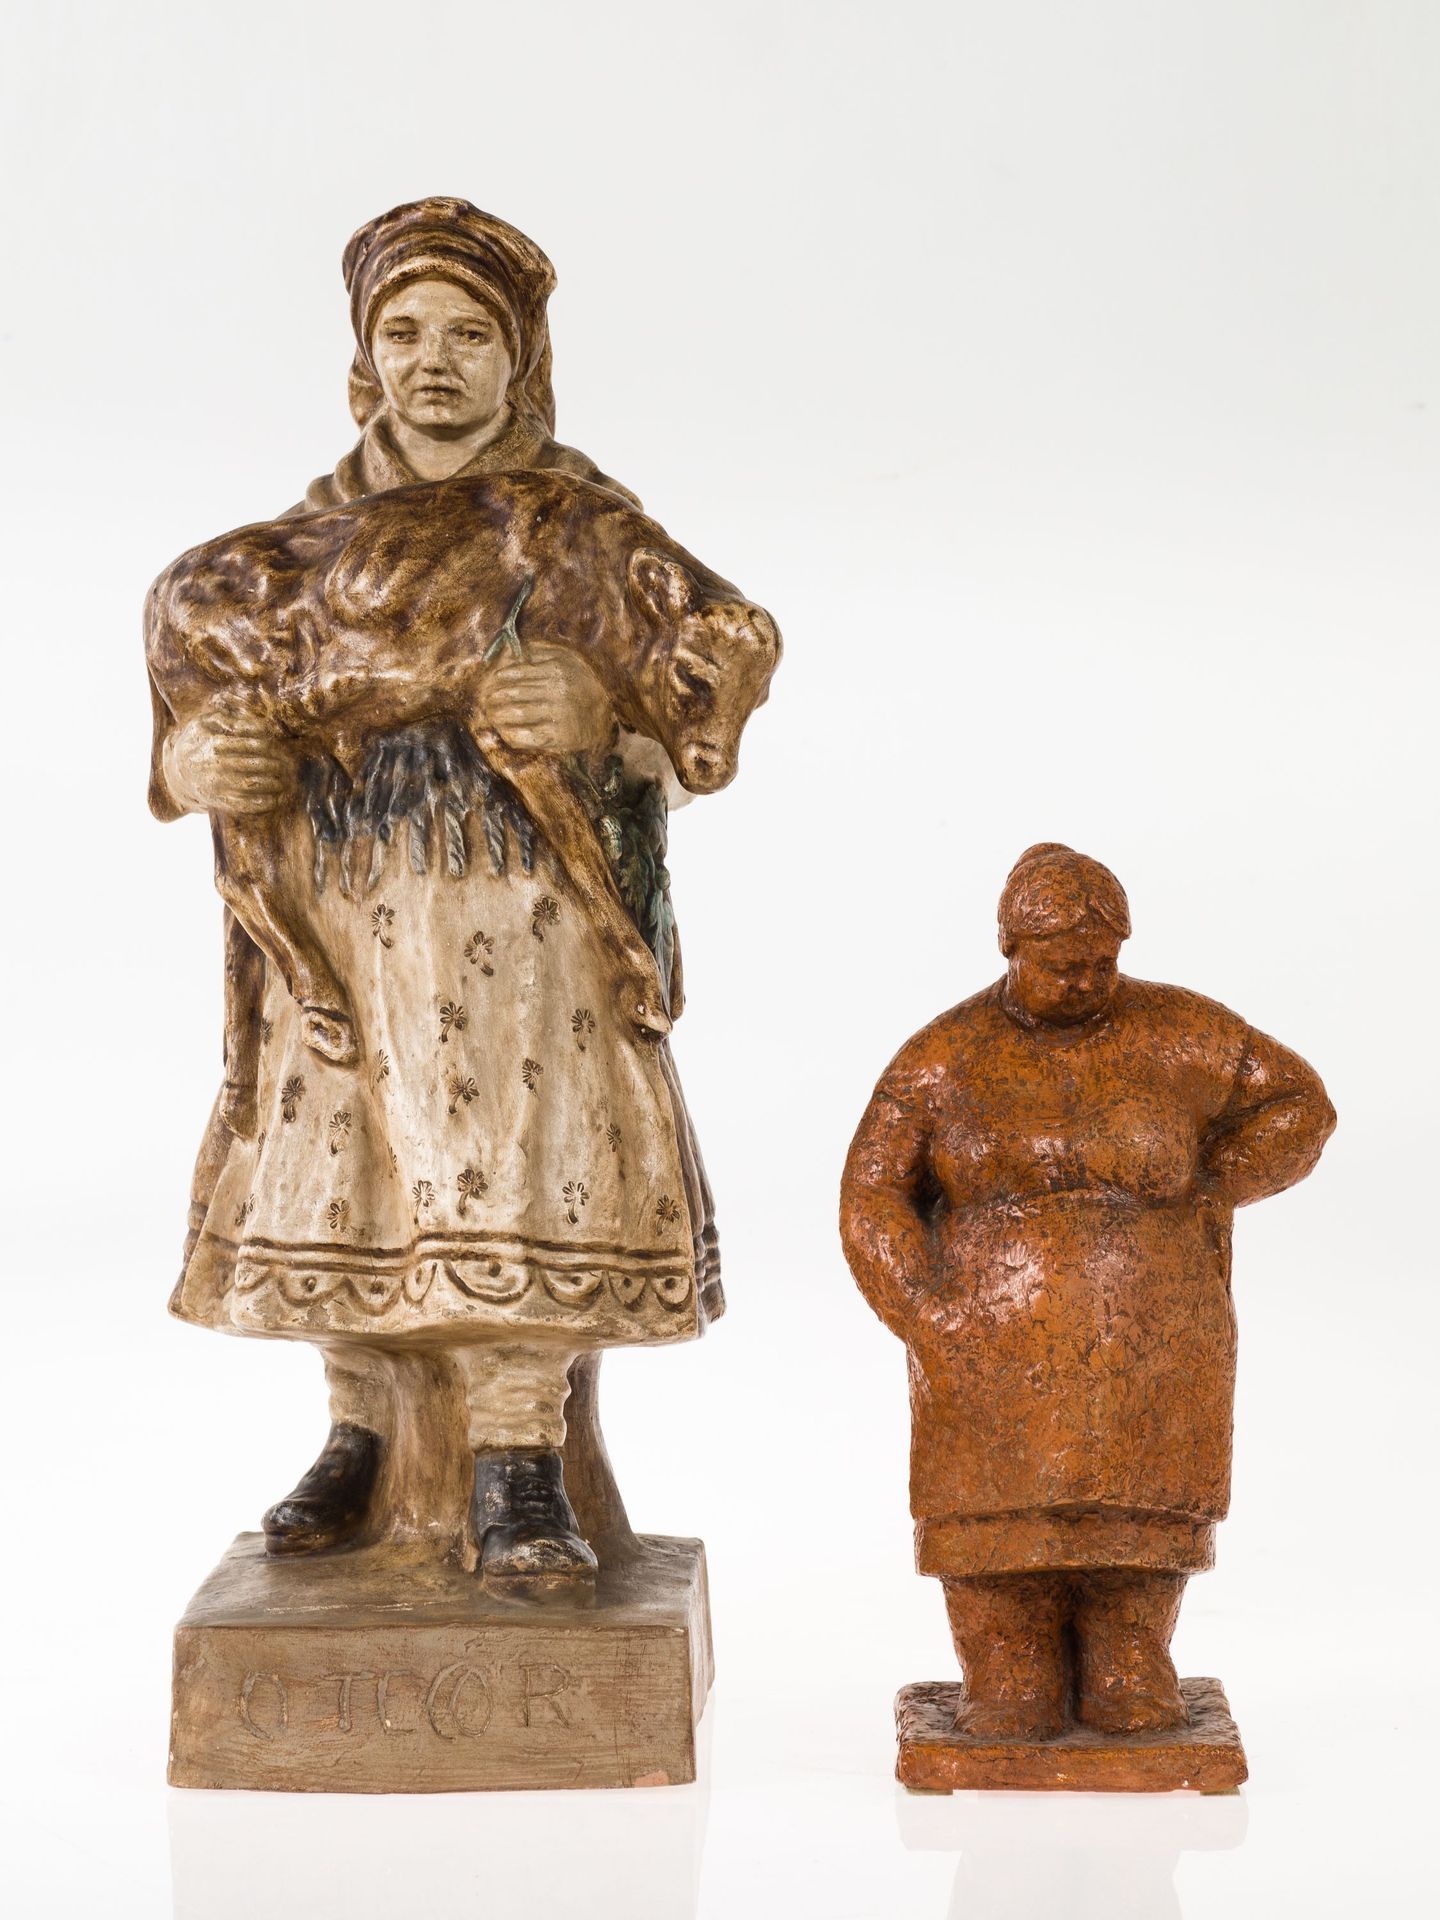 ANONYMOUS 根据弗朗西斯科-阿索雷-冈萨雷斯的雕塑作品。正面有标题，底部有 "加利西亚艺术陶瓷 "的印记。

 尺寸：43厘米